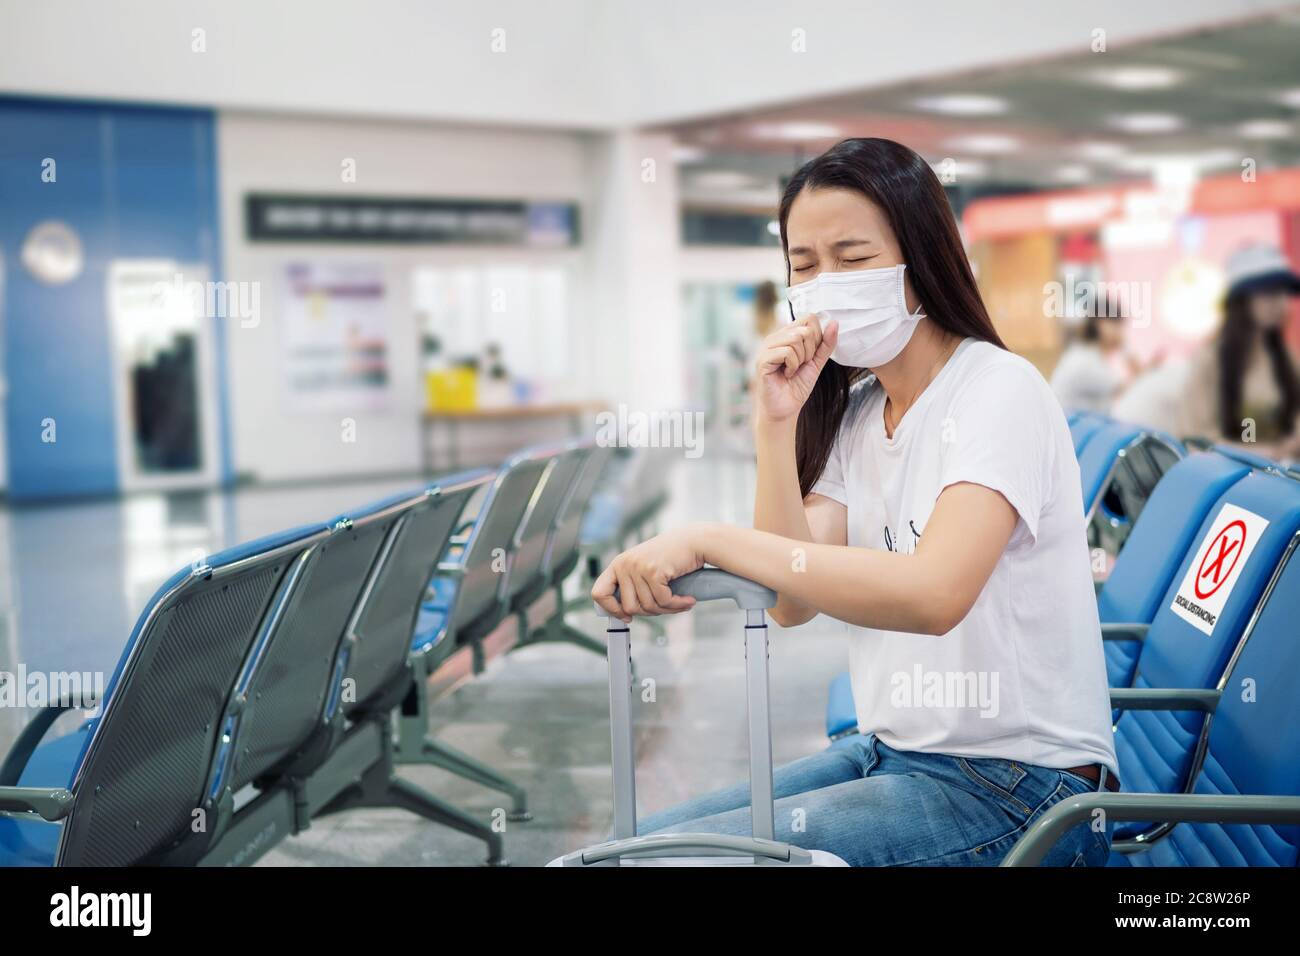 Turista asiático sentirse enfermo, toser, usar máscara y sentarse en silla con distanciamiento social para prevenir una pandemia durante los viajes en la terminal del aeropuerto. Foto de stock